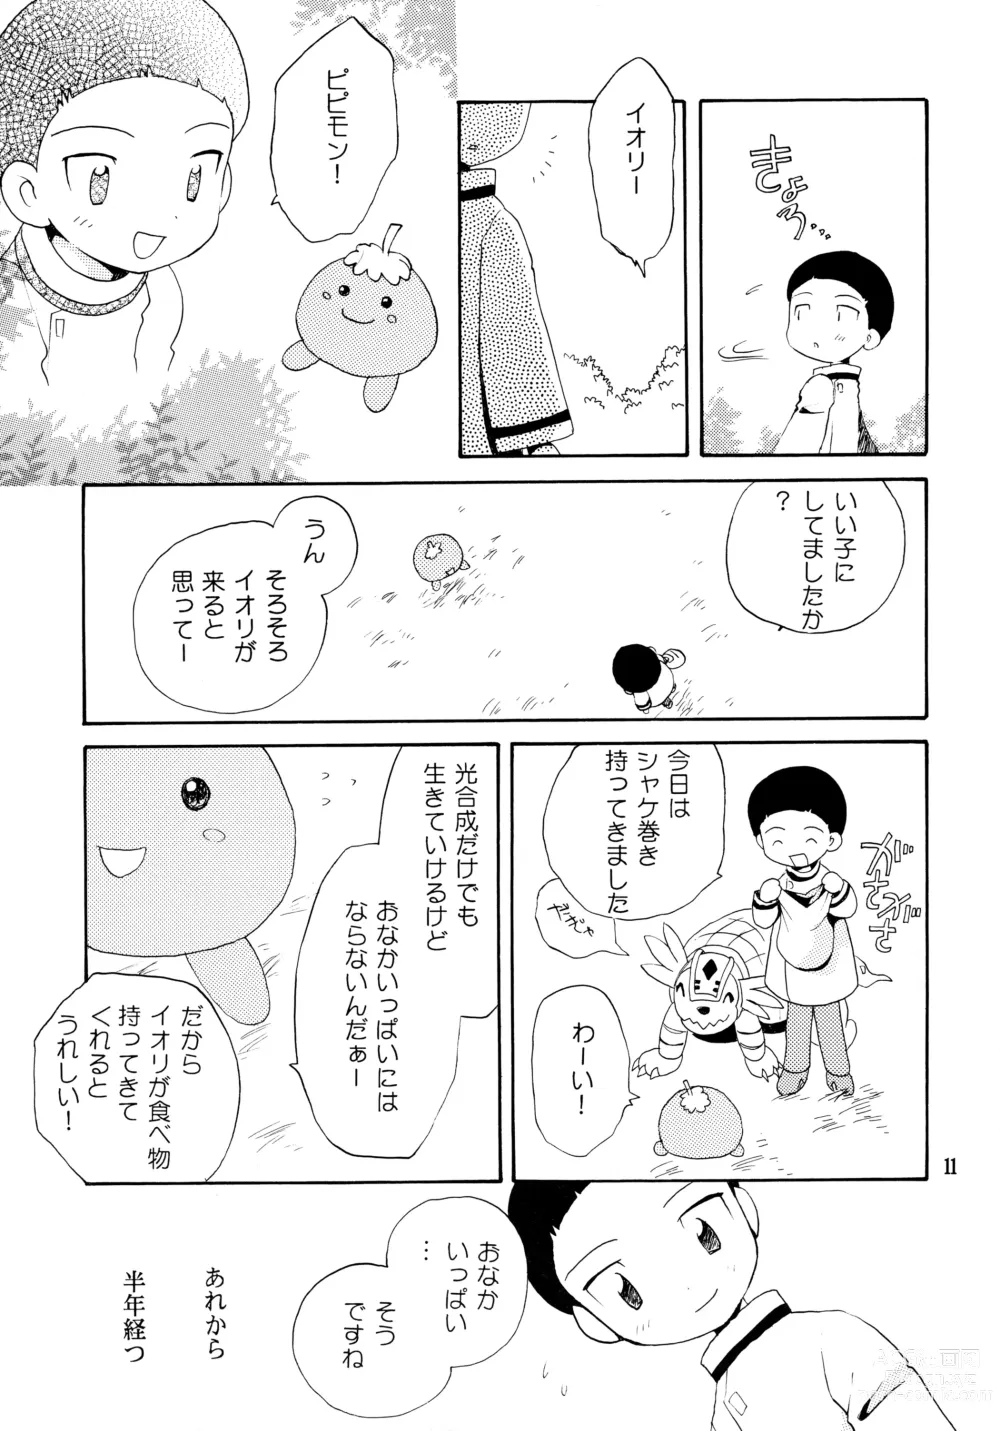 Page 10 of doujinshi Yorokobi mo Kanashimi mo Ikutoshitsuki